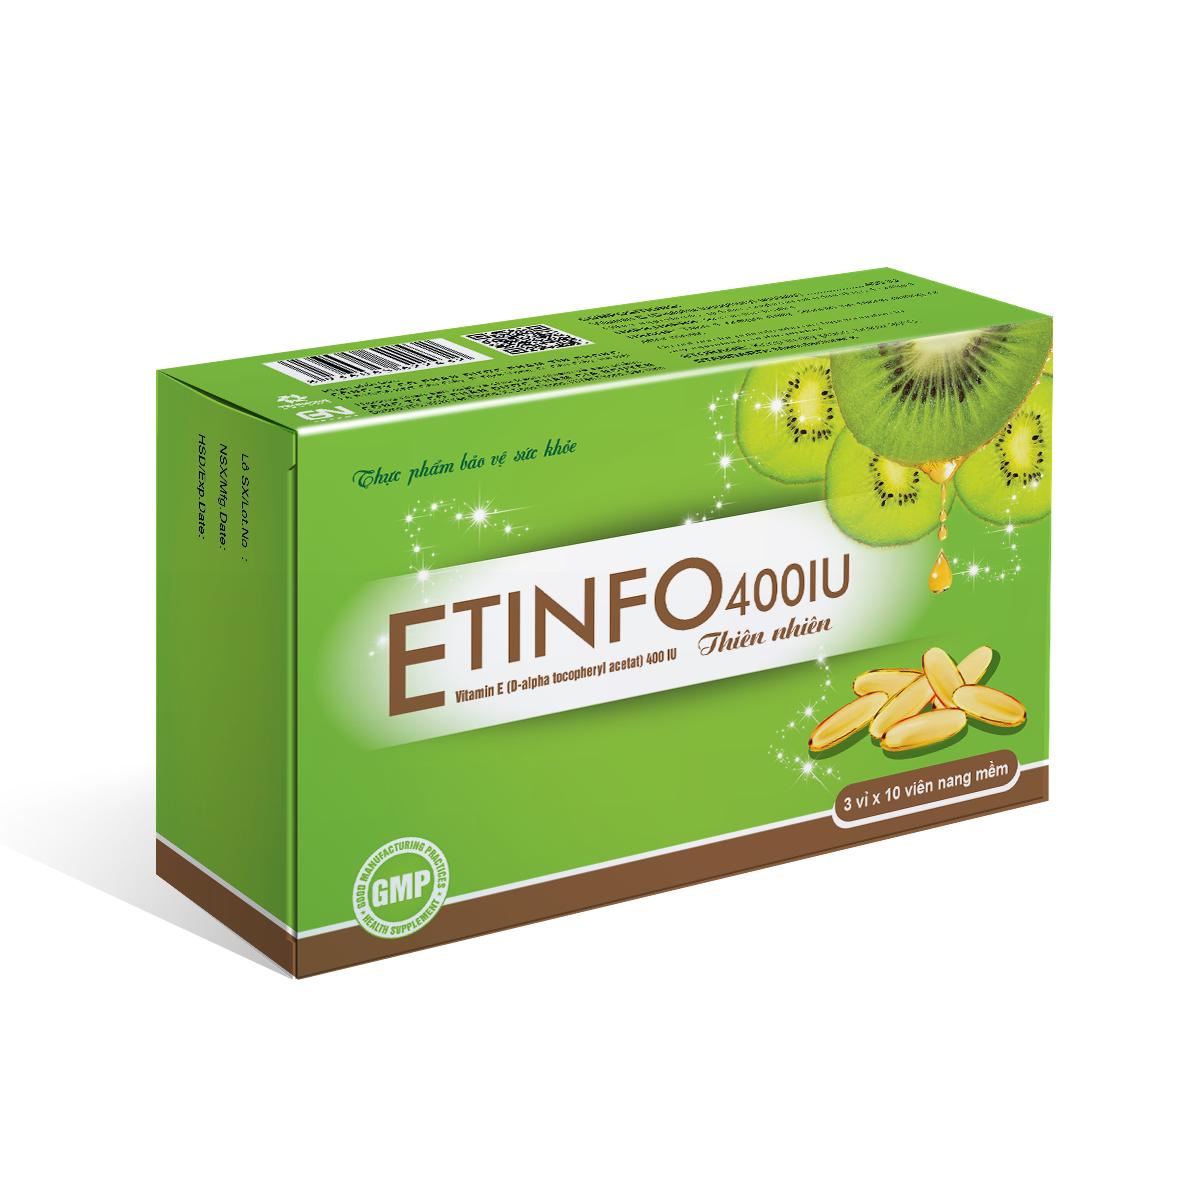 Etinfo 400IU Bổ sung vitamin E thiên nhiên 400 iU giúp ngăn ngừa lão hóa - Hộp 30 viên